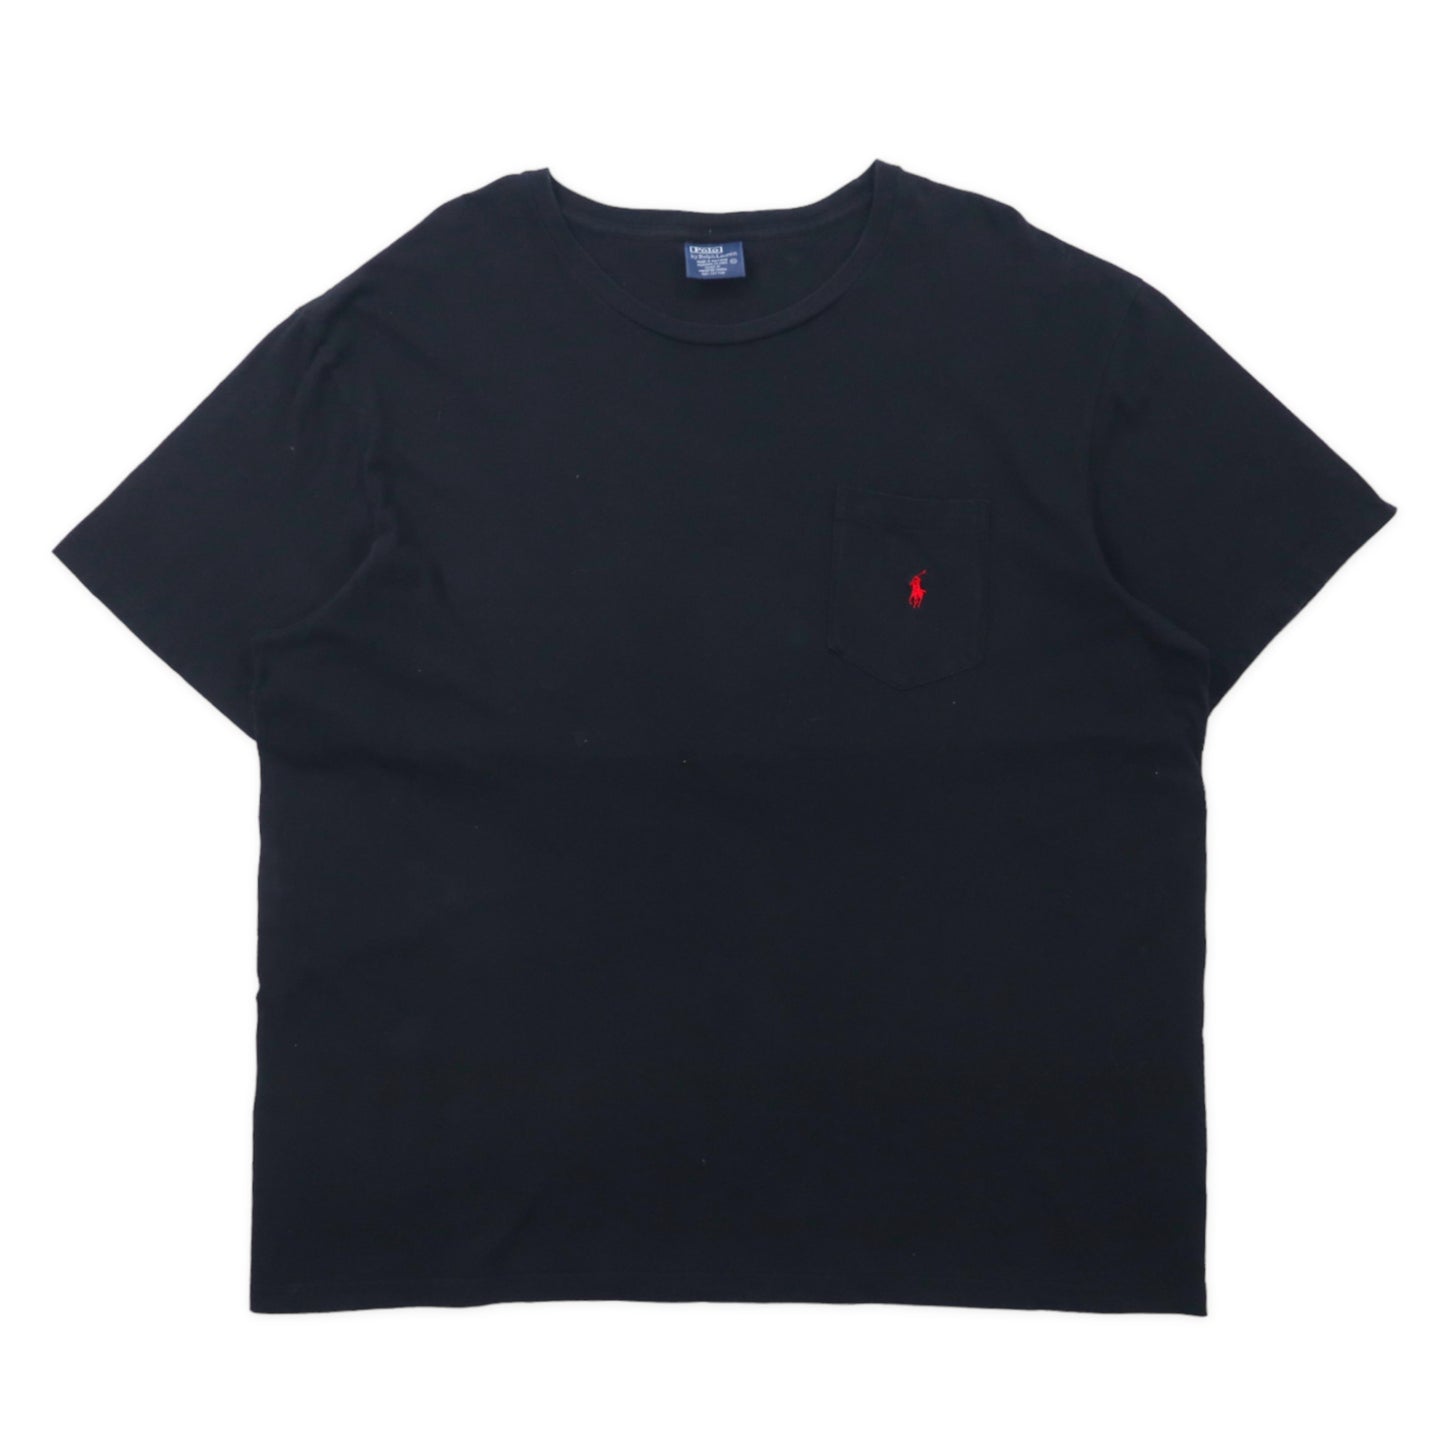 Polo by Ralph Lauren ポケットTシャツ XL ブラック コットン スモールポニー刺繍 ビッグサイズ